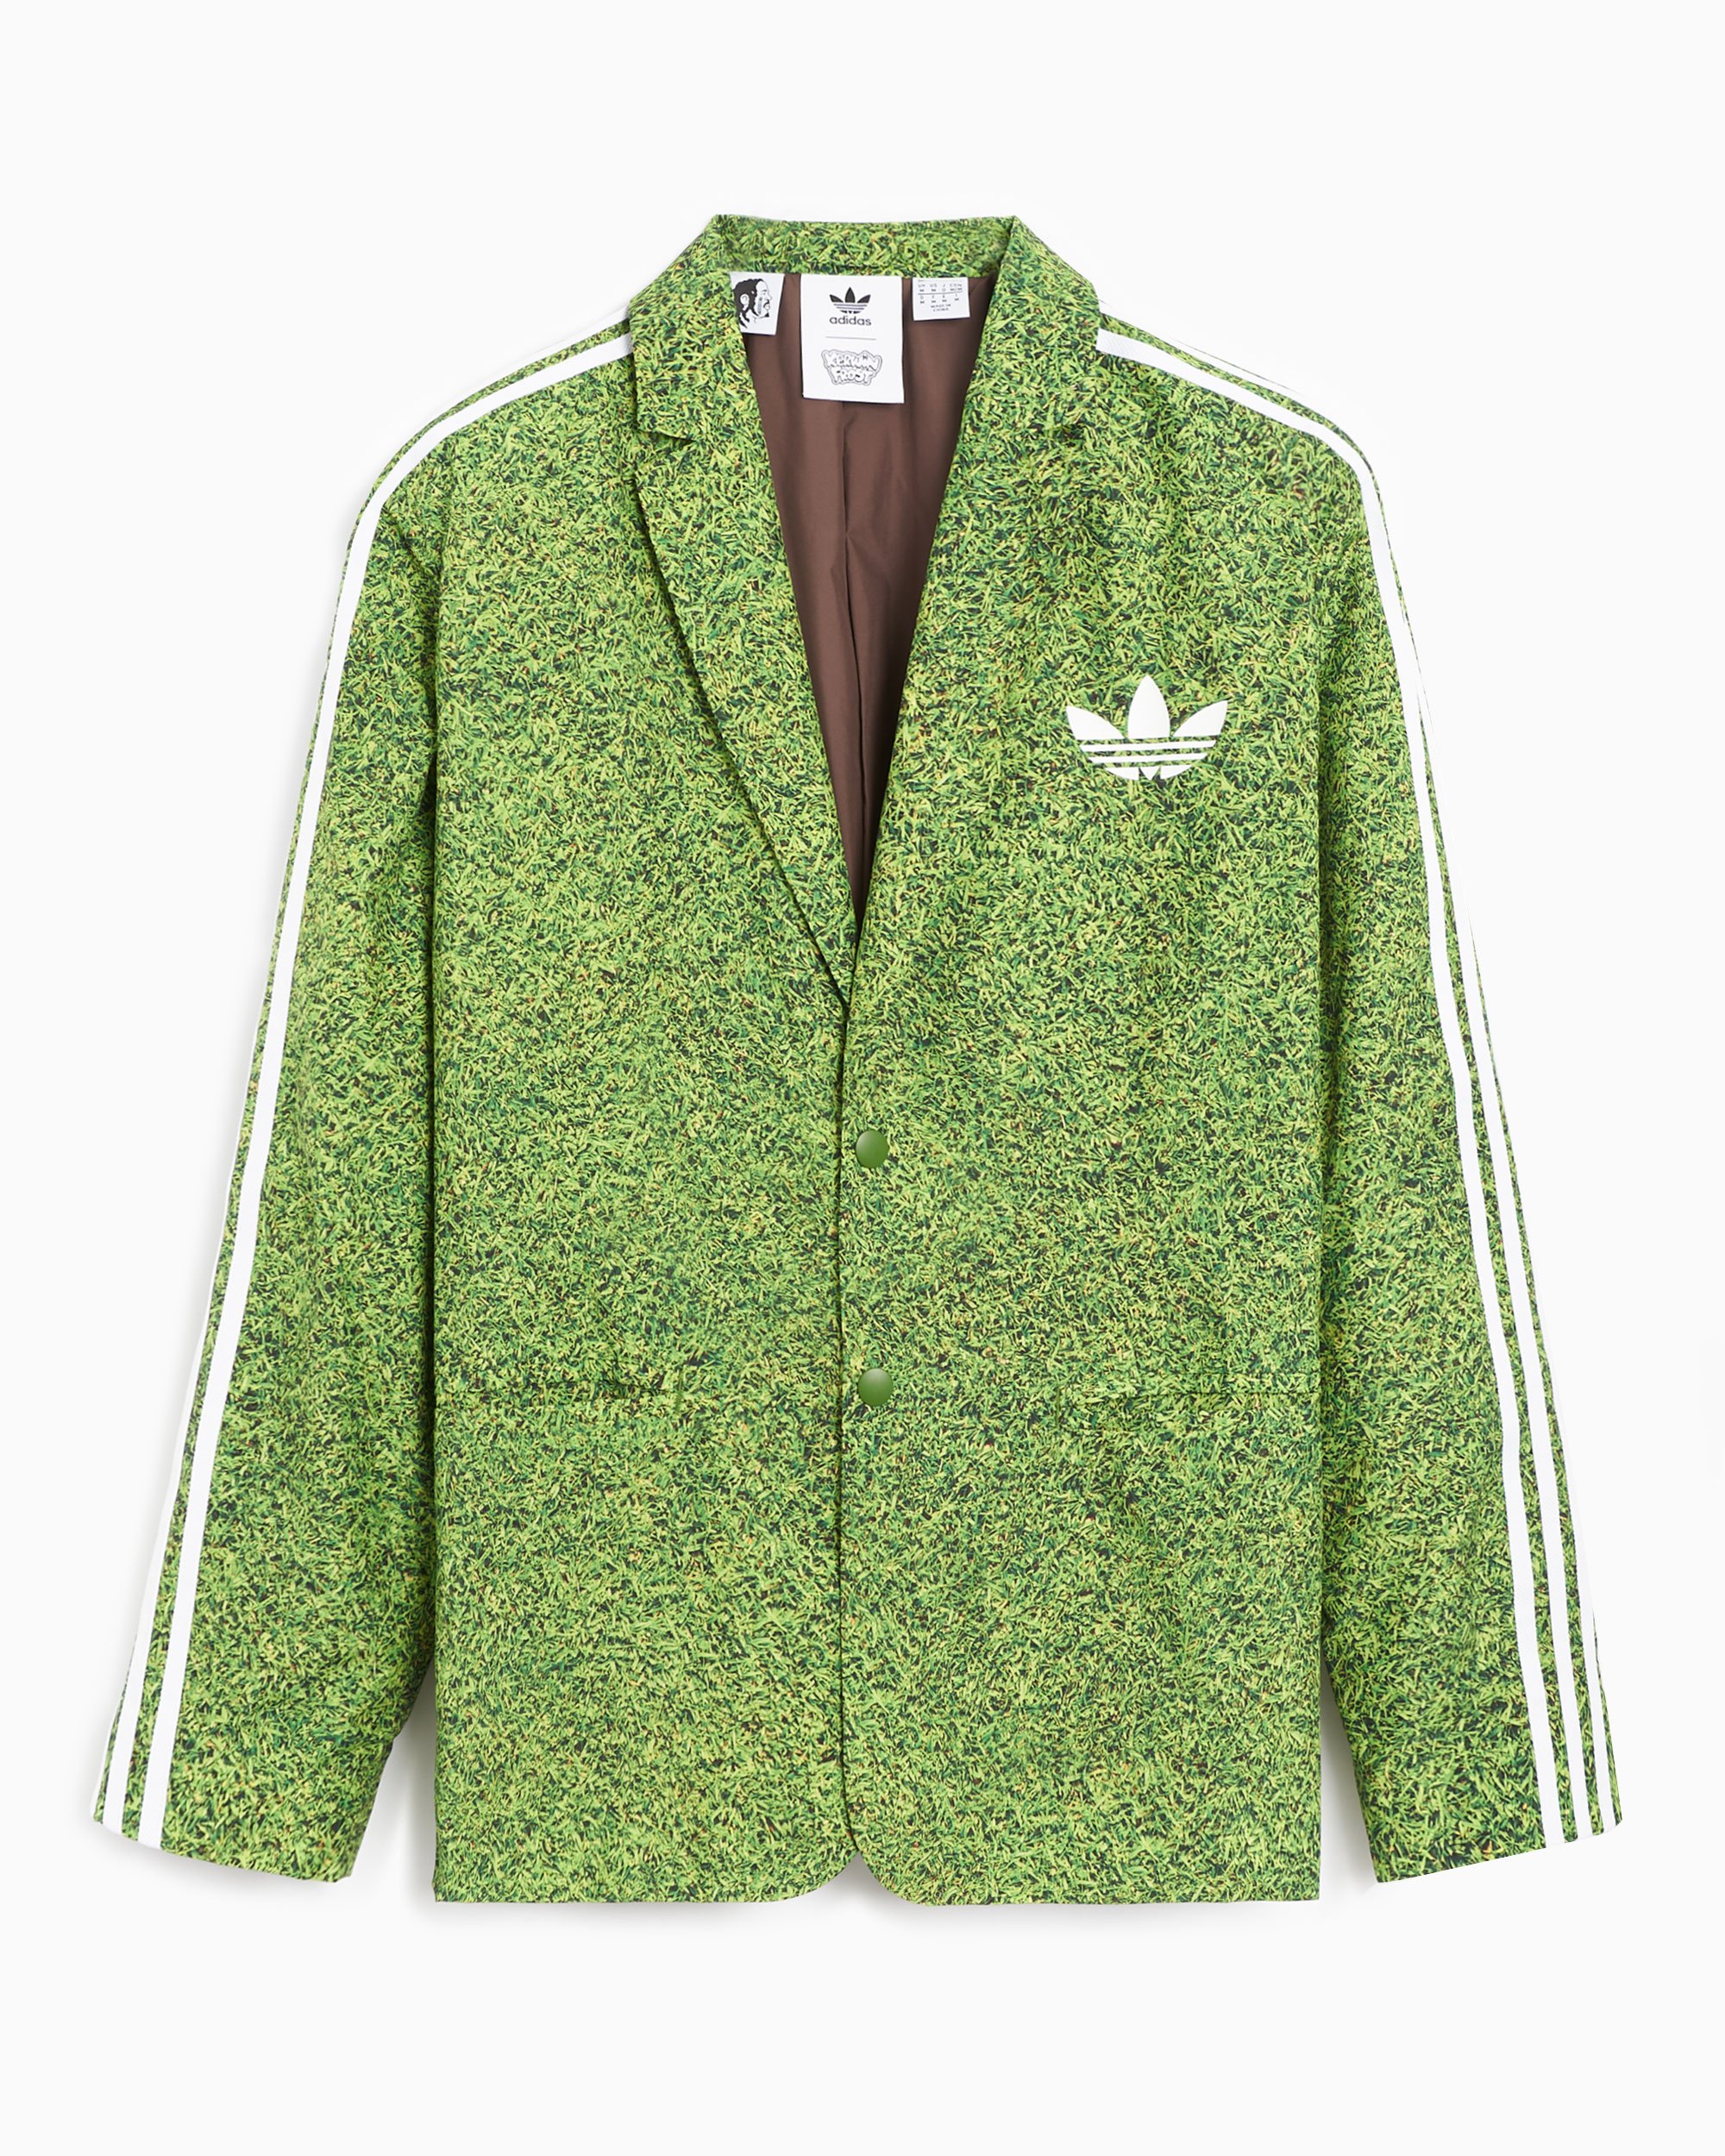 adidas x Kerwin Frost Men's Blazer Green HI5686| Buy Online at